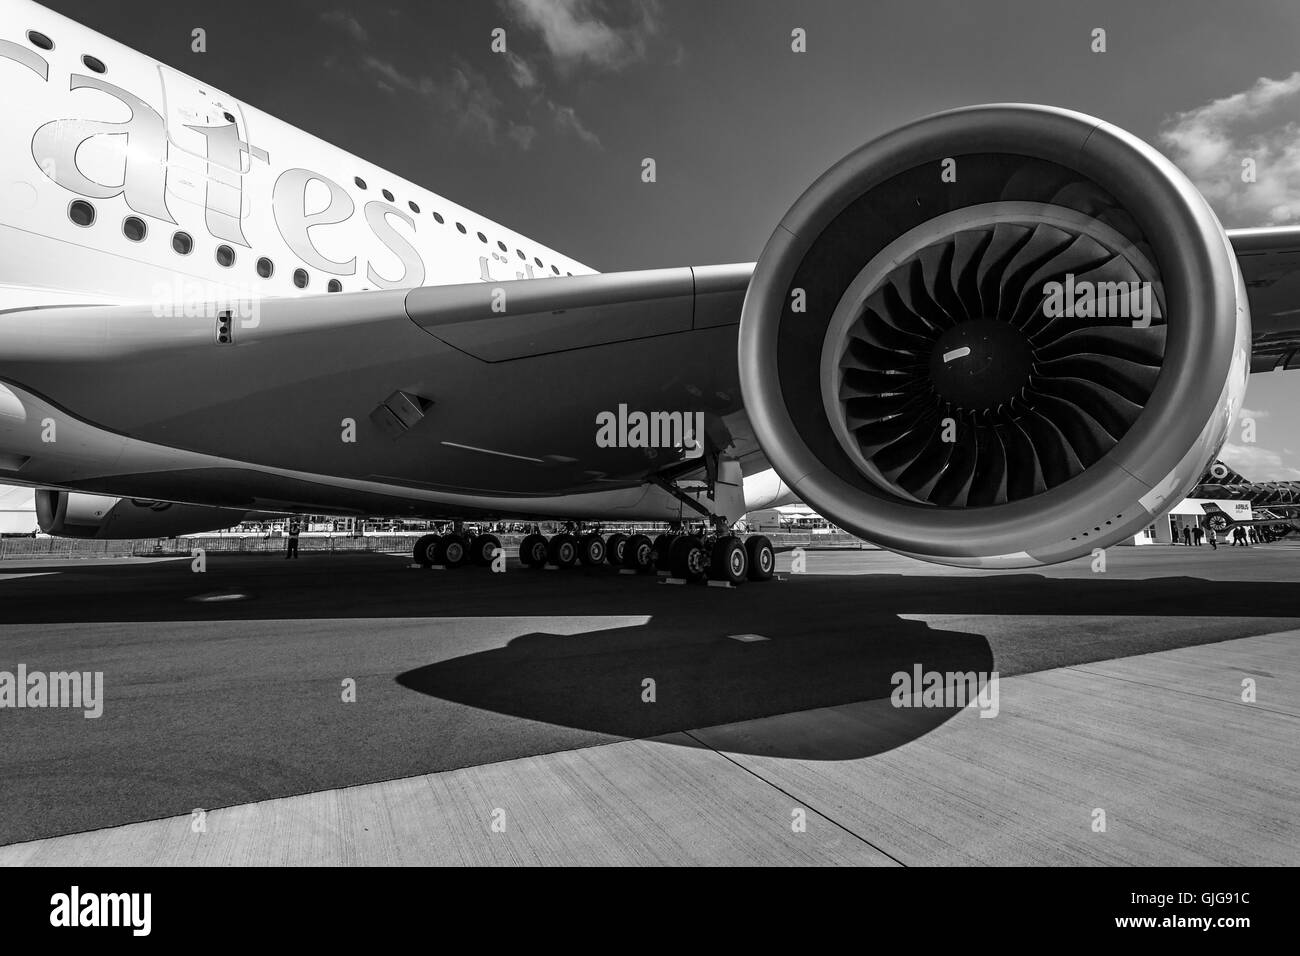 Dettaglio del parafango e un motore turbofan 'Engine Alliance GP7000' di aeromobili più grandi del mondo - Airbus A380. Foto Stock